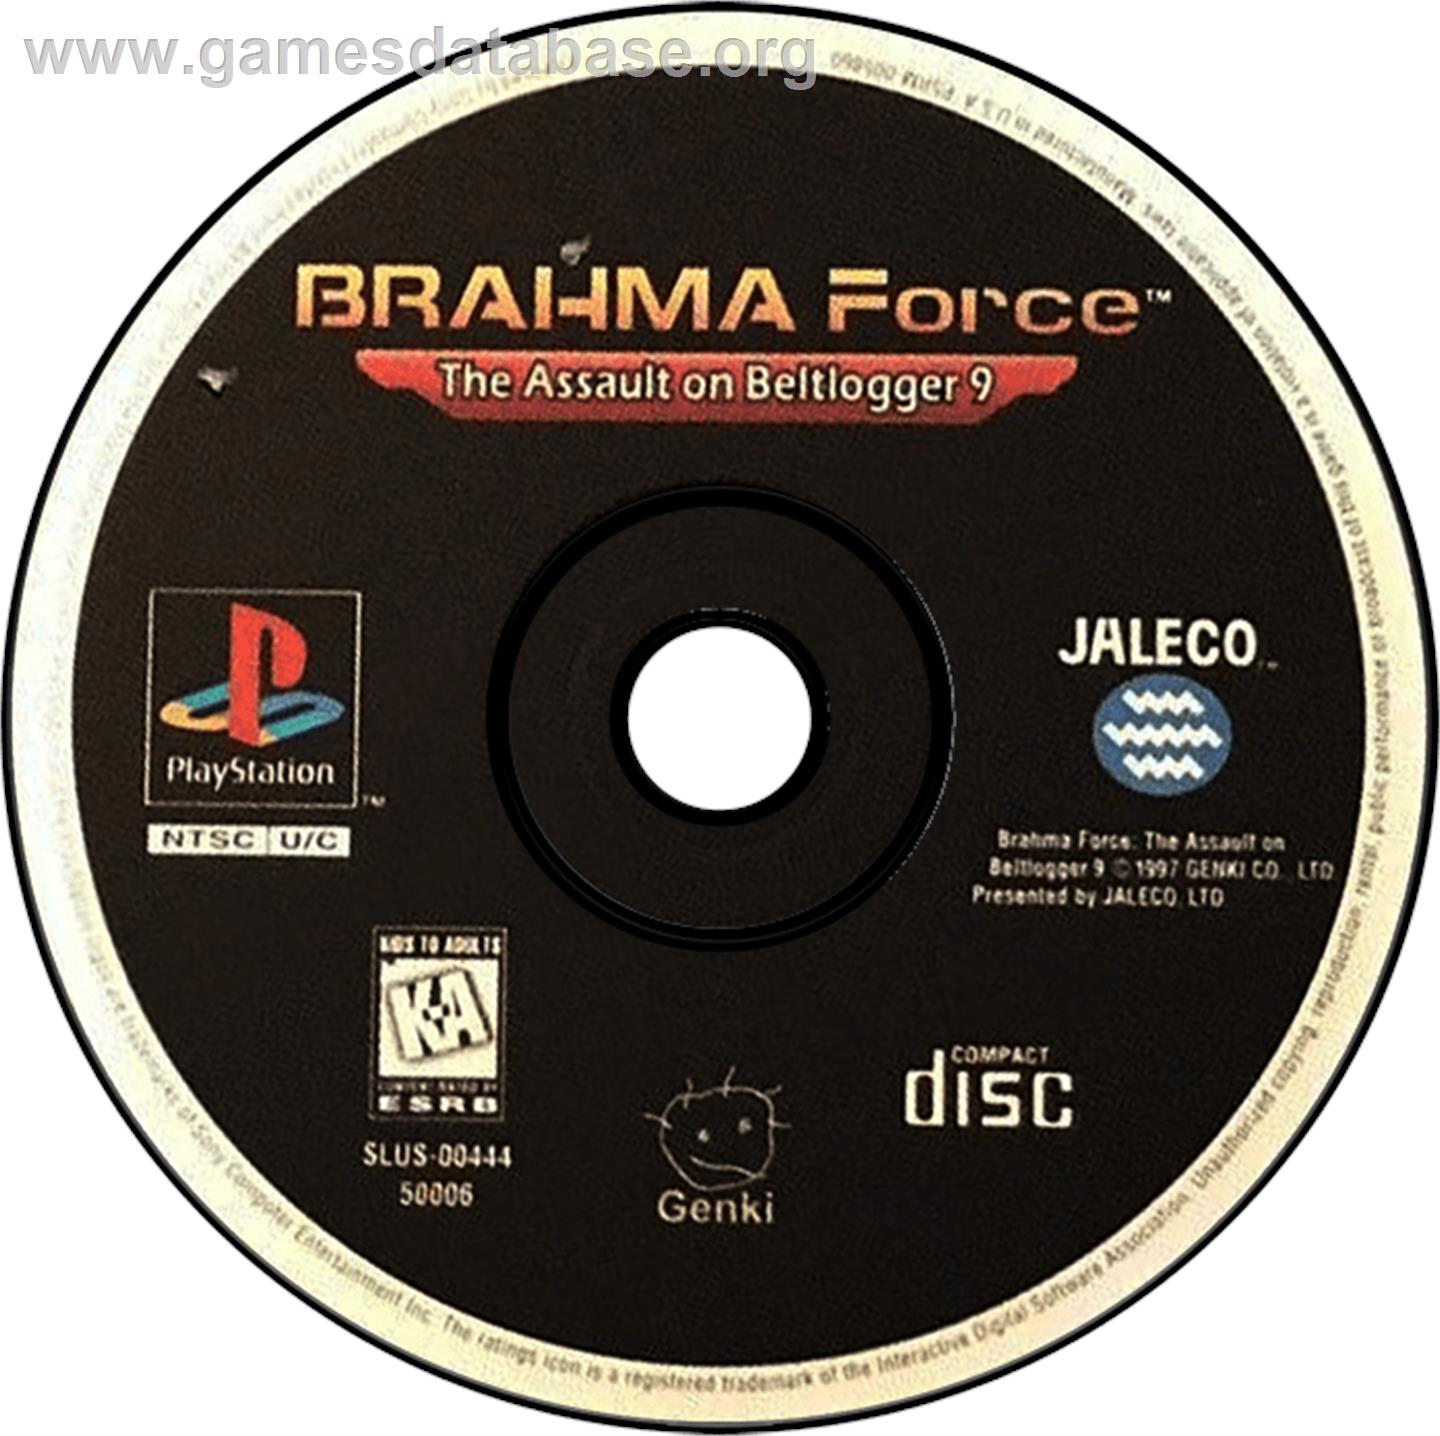 BRAHMA Force: The Assault on Beltlogger 9 - Sony Playstation - Artwork - Disc